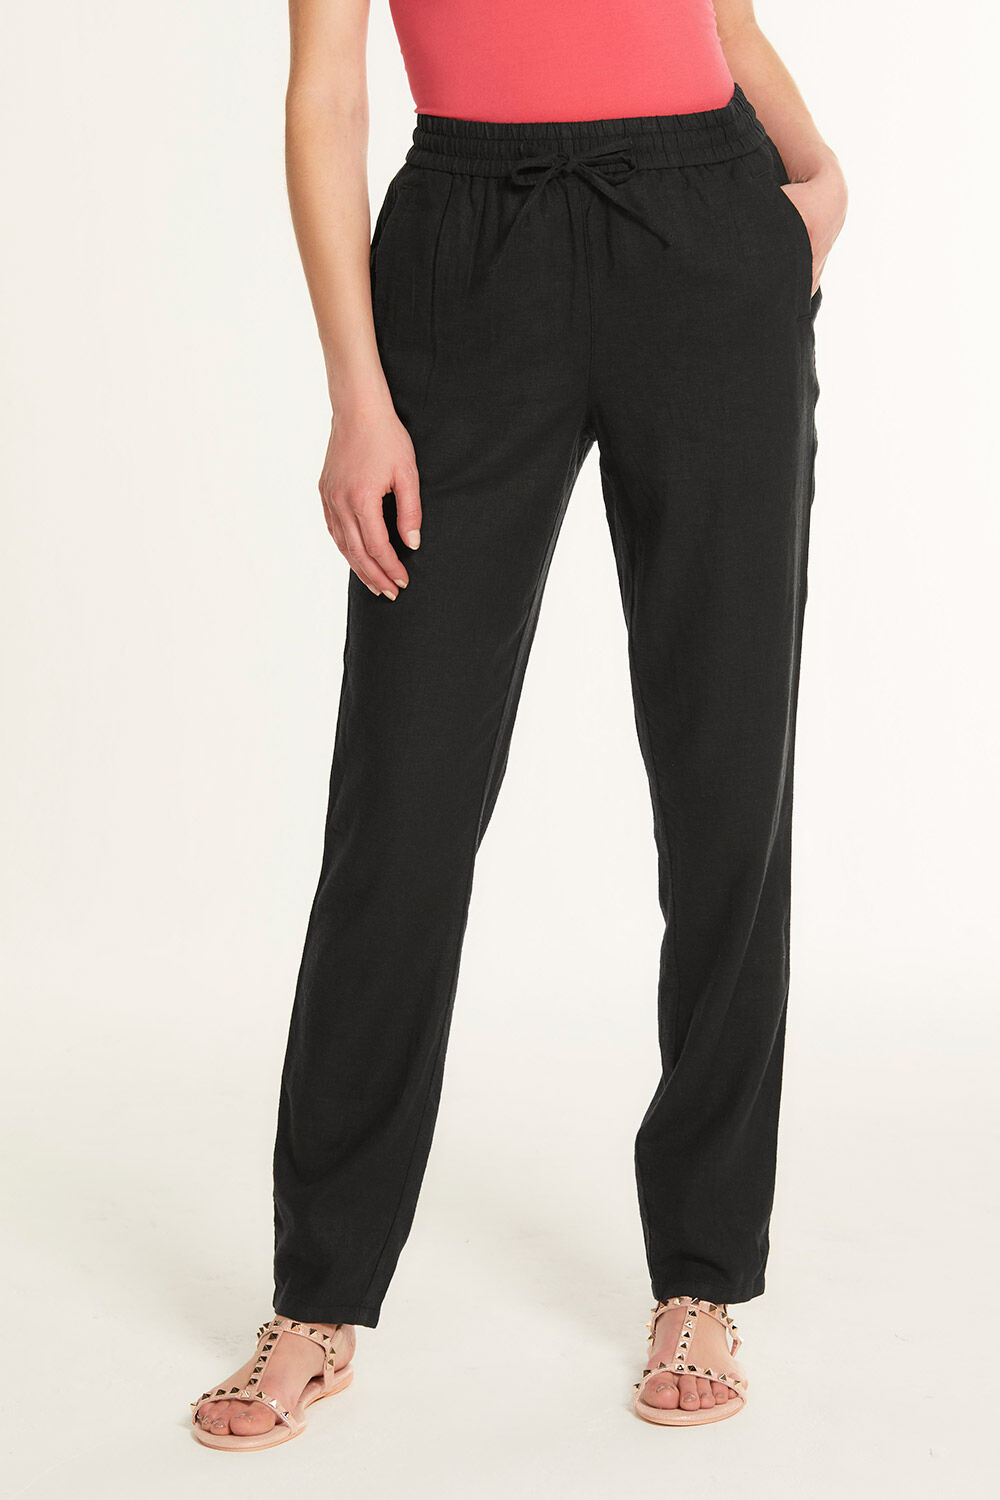 100% linen trousers - Woman | Mango United Kingdom (Channel Islands)